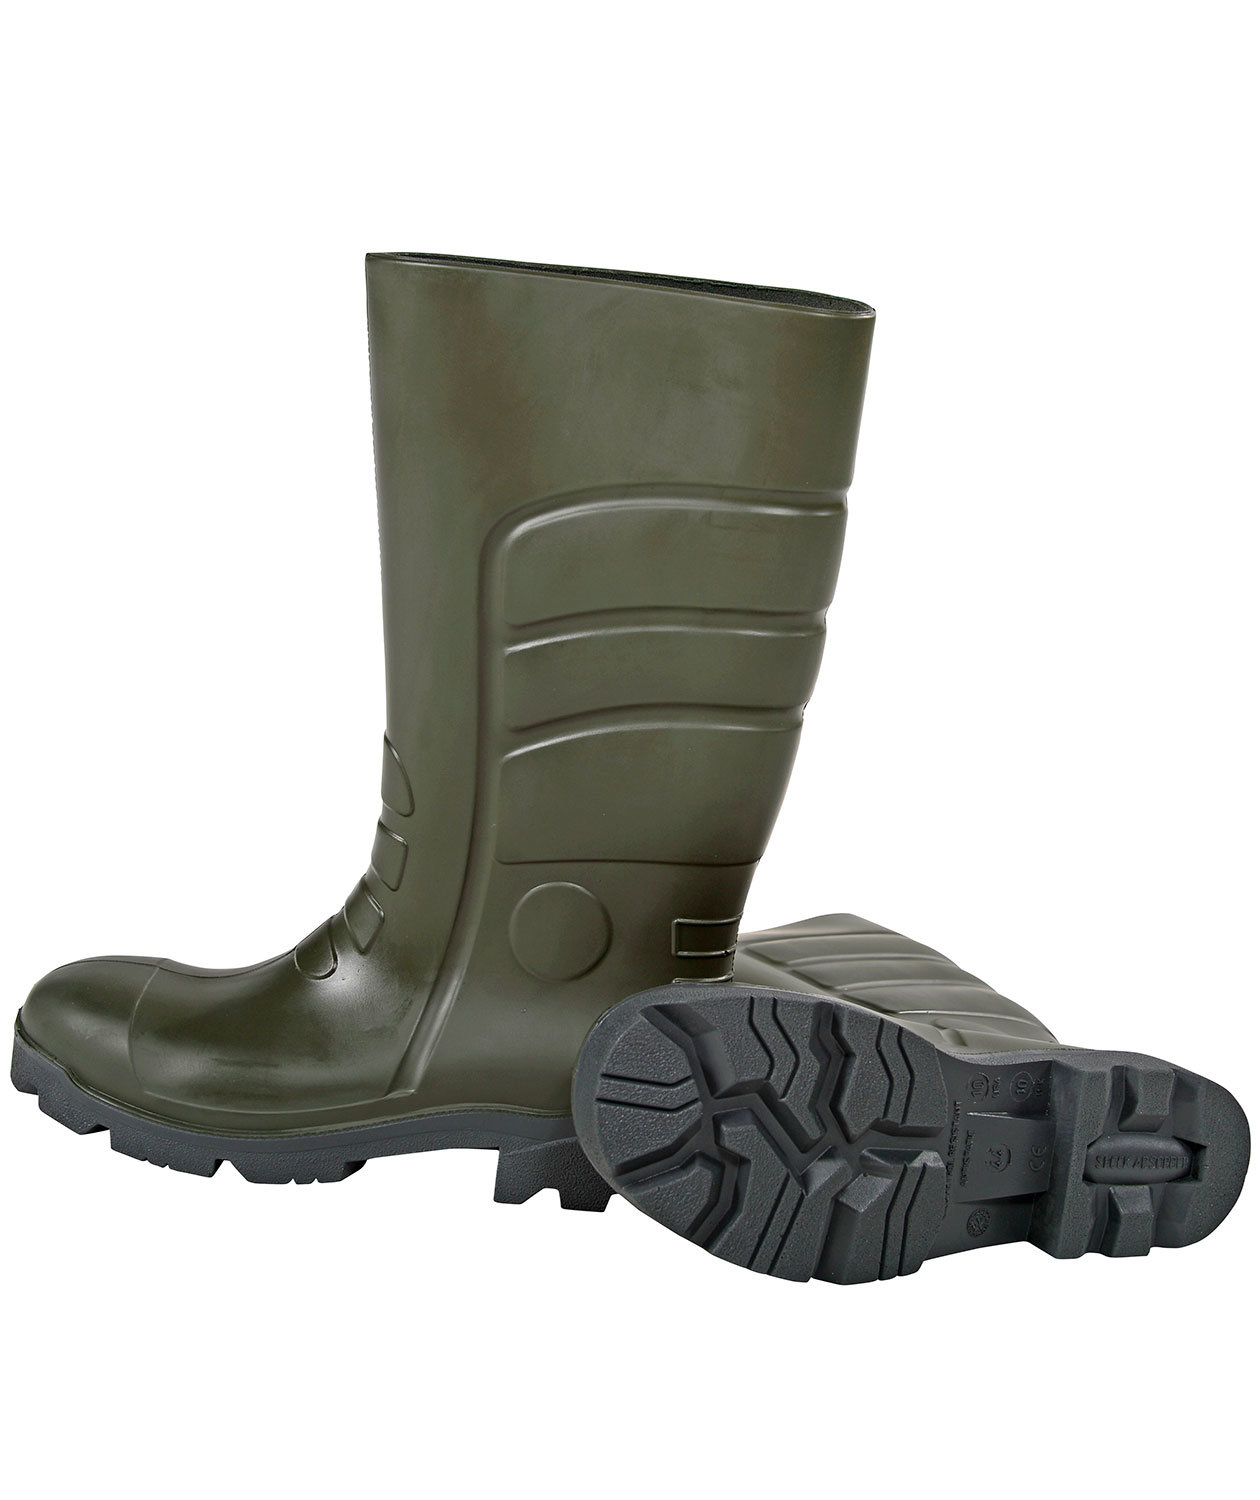 WARM LONG SOCKS FOR BOOTS Felt  2-14 UK wellington rubber boots waders women men 